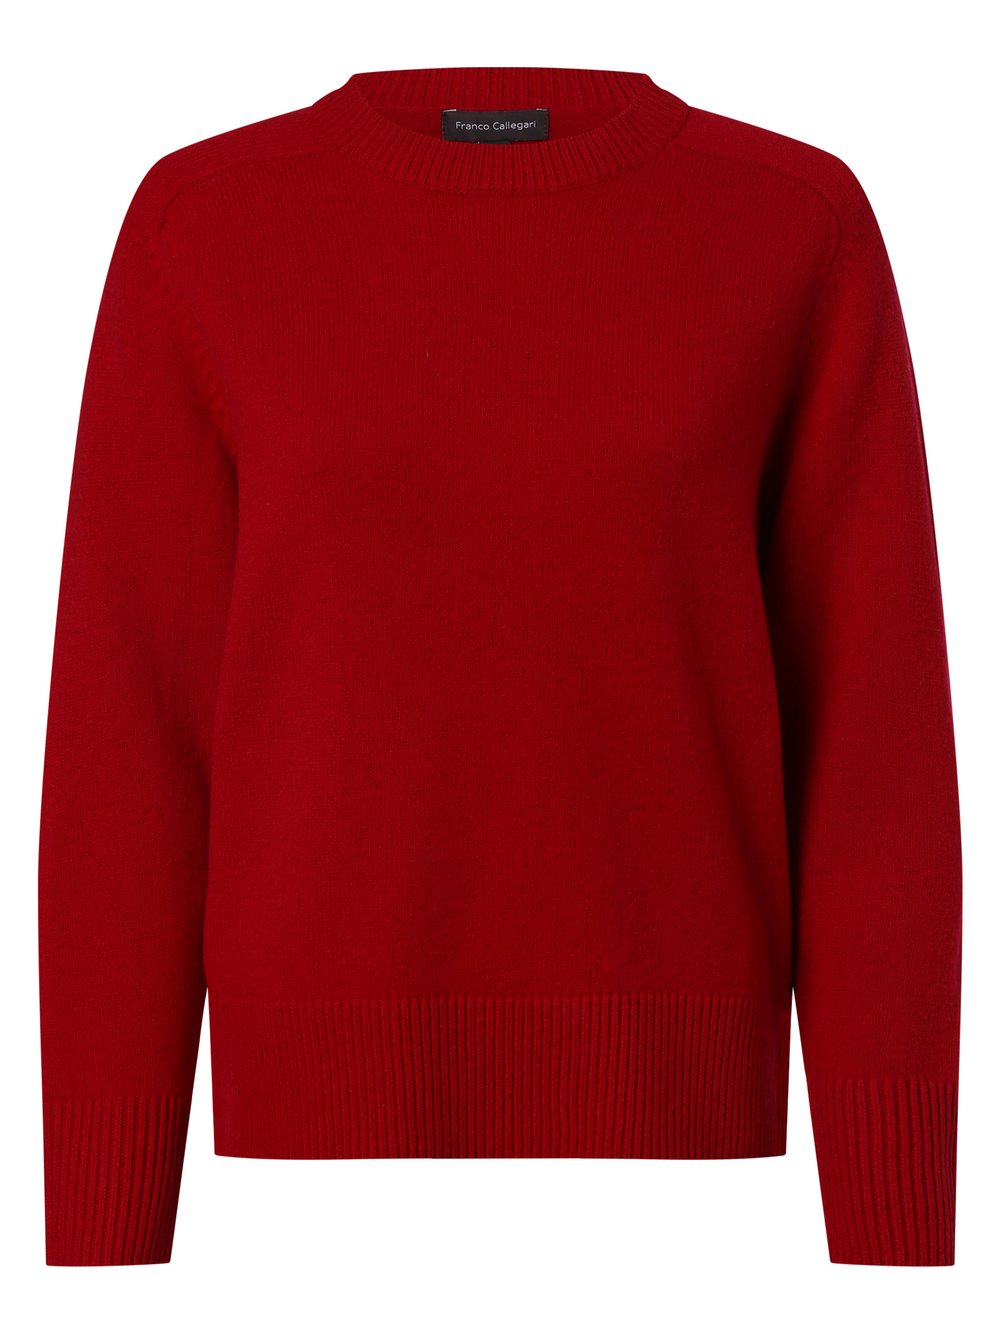 Franco Callegari - Damski sweter z wełny merino, czerwony